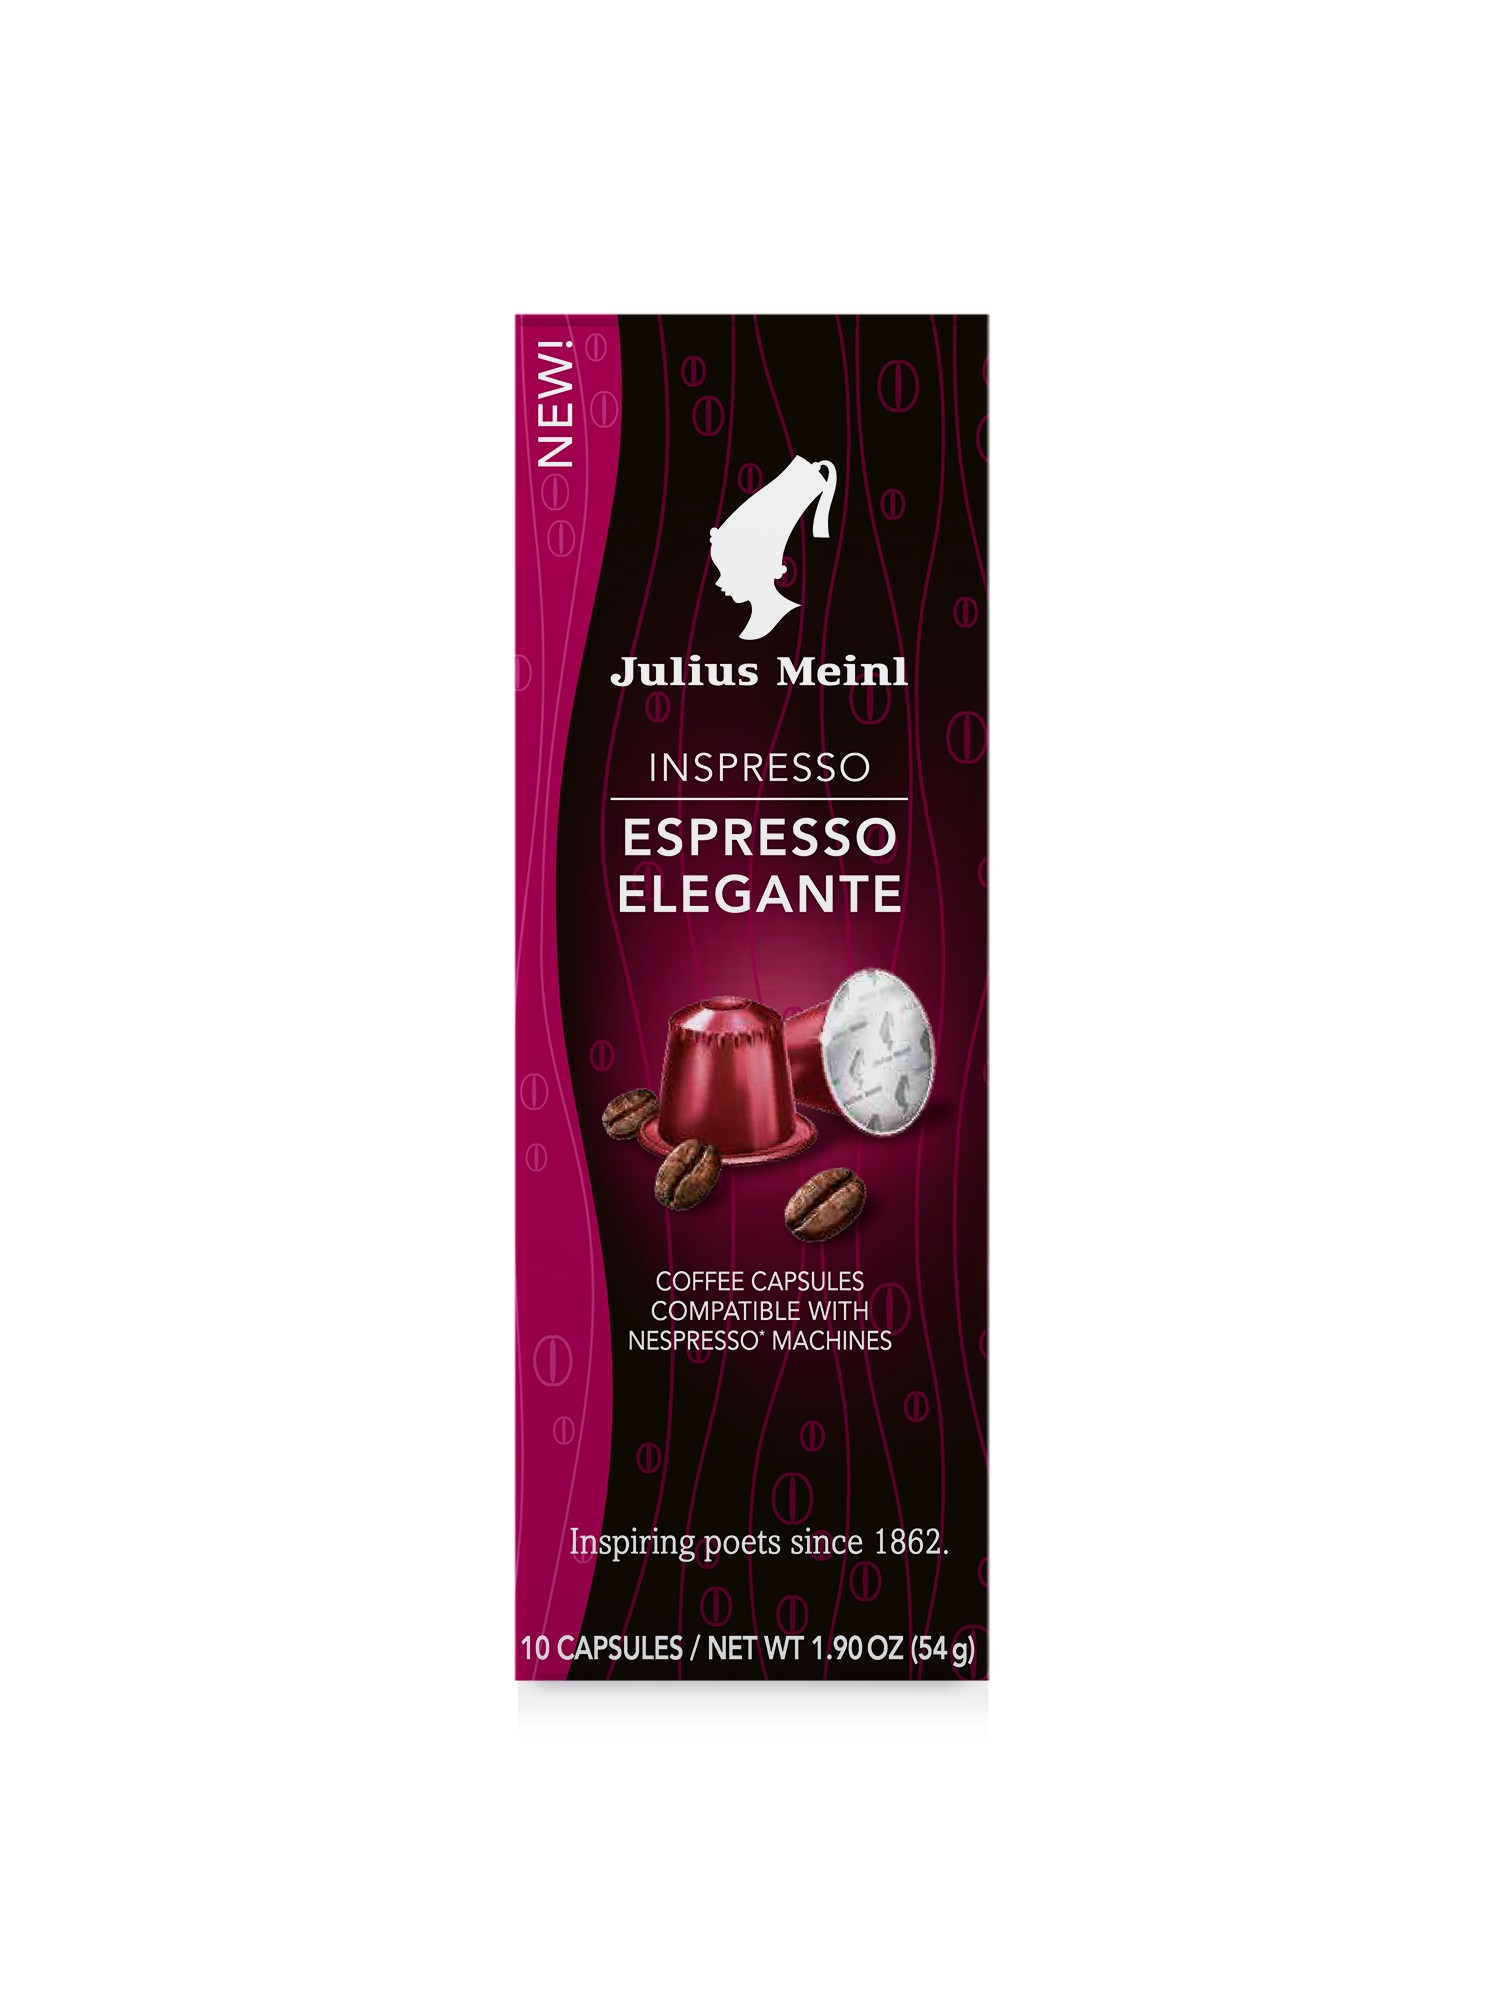 Кофе в капсулах Julius Meinl Espresso Elegante Inspresso   коробка В капсулах  кофе 